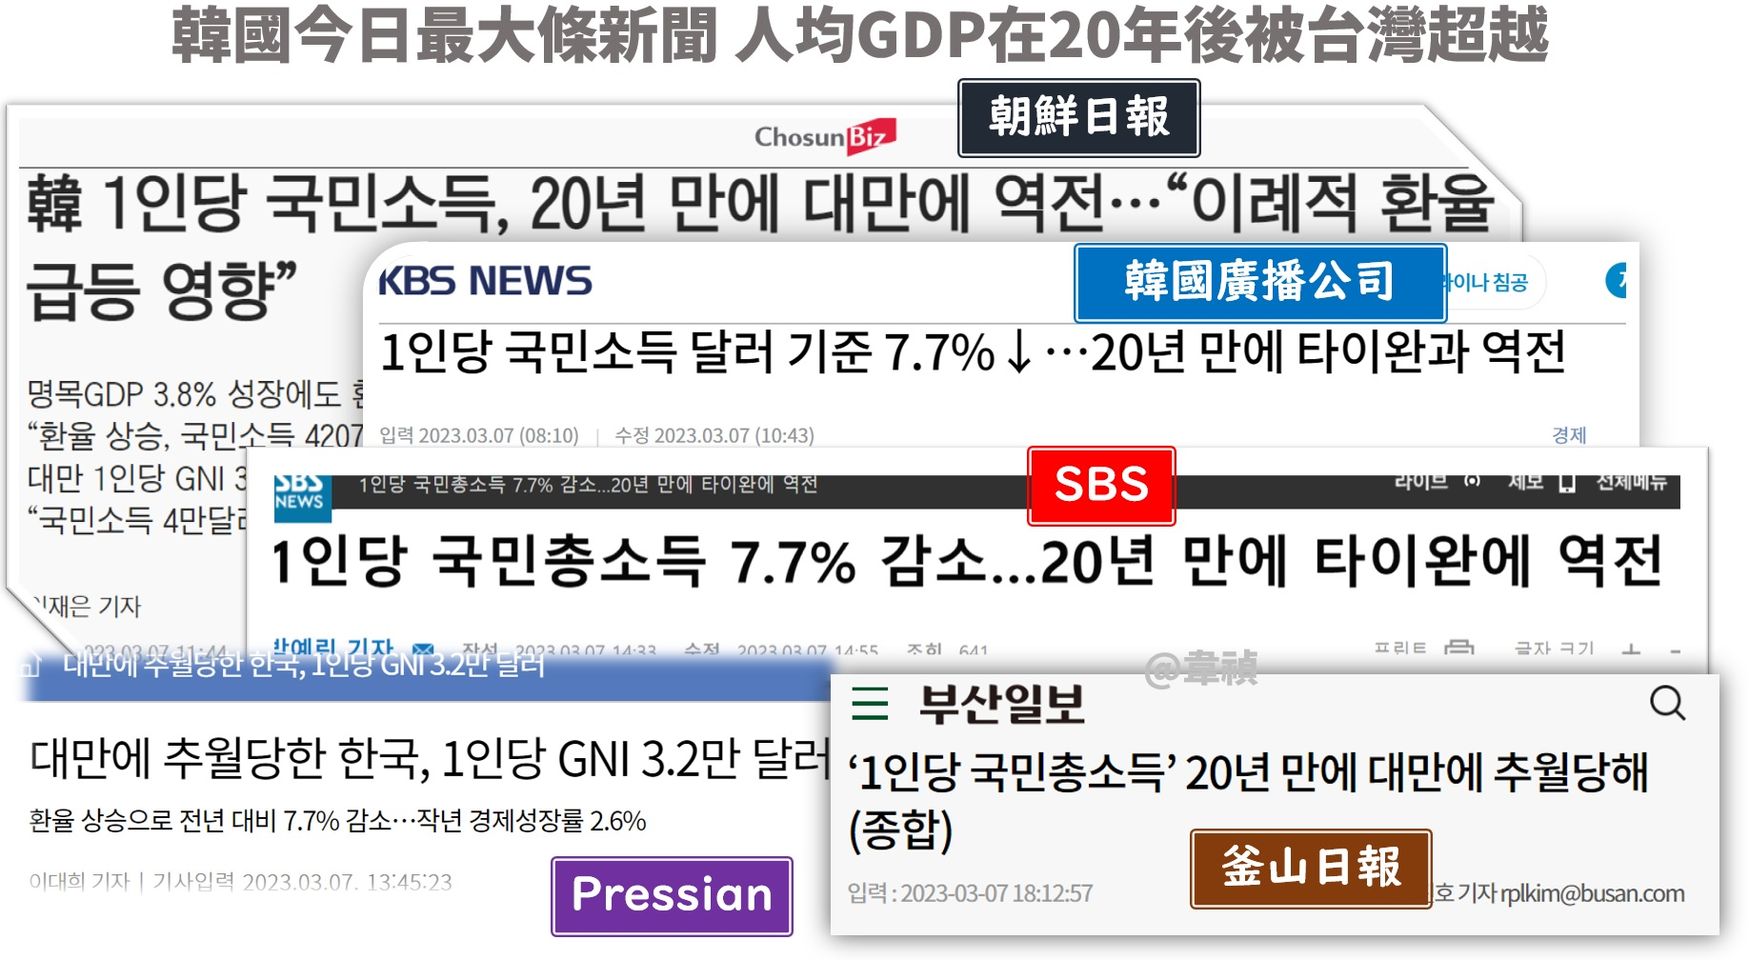 韓國今天最大條新聞 人均GDP在20年後被台灣超越